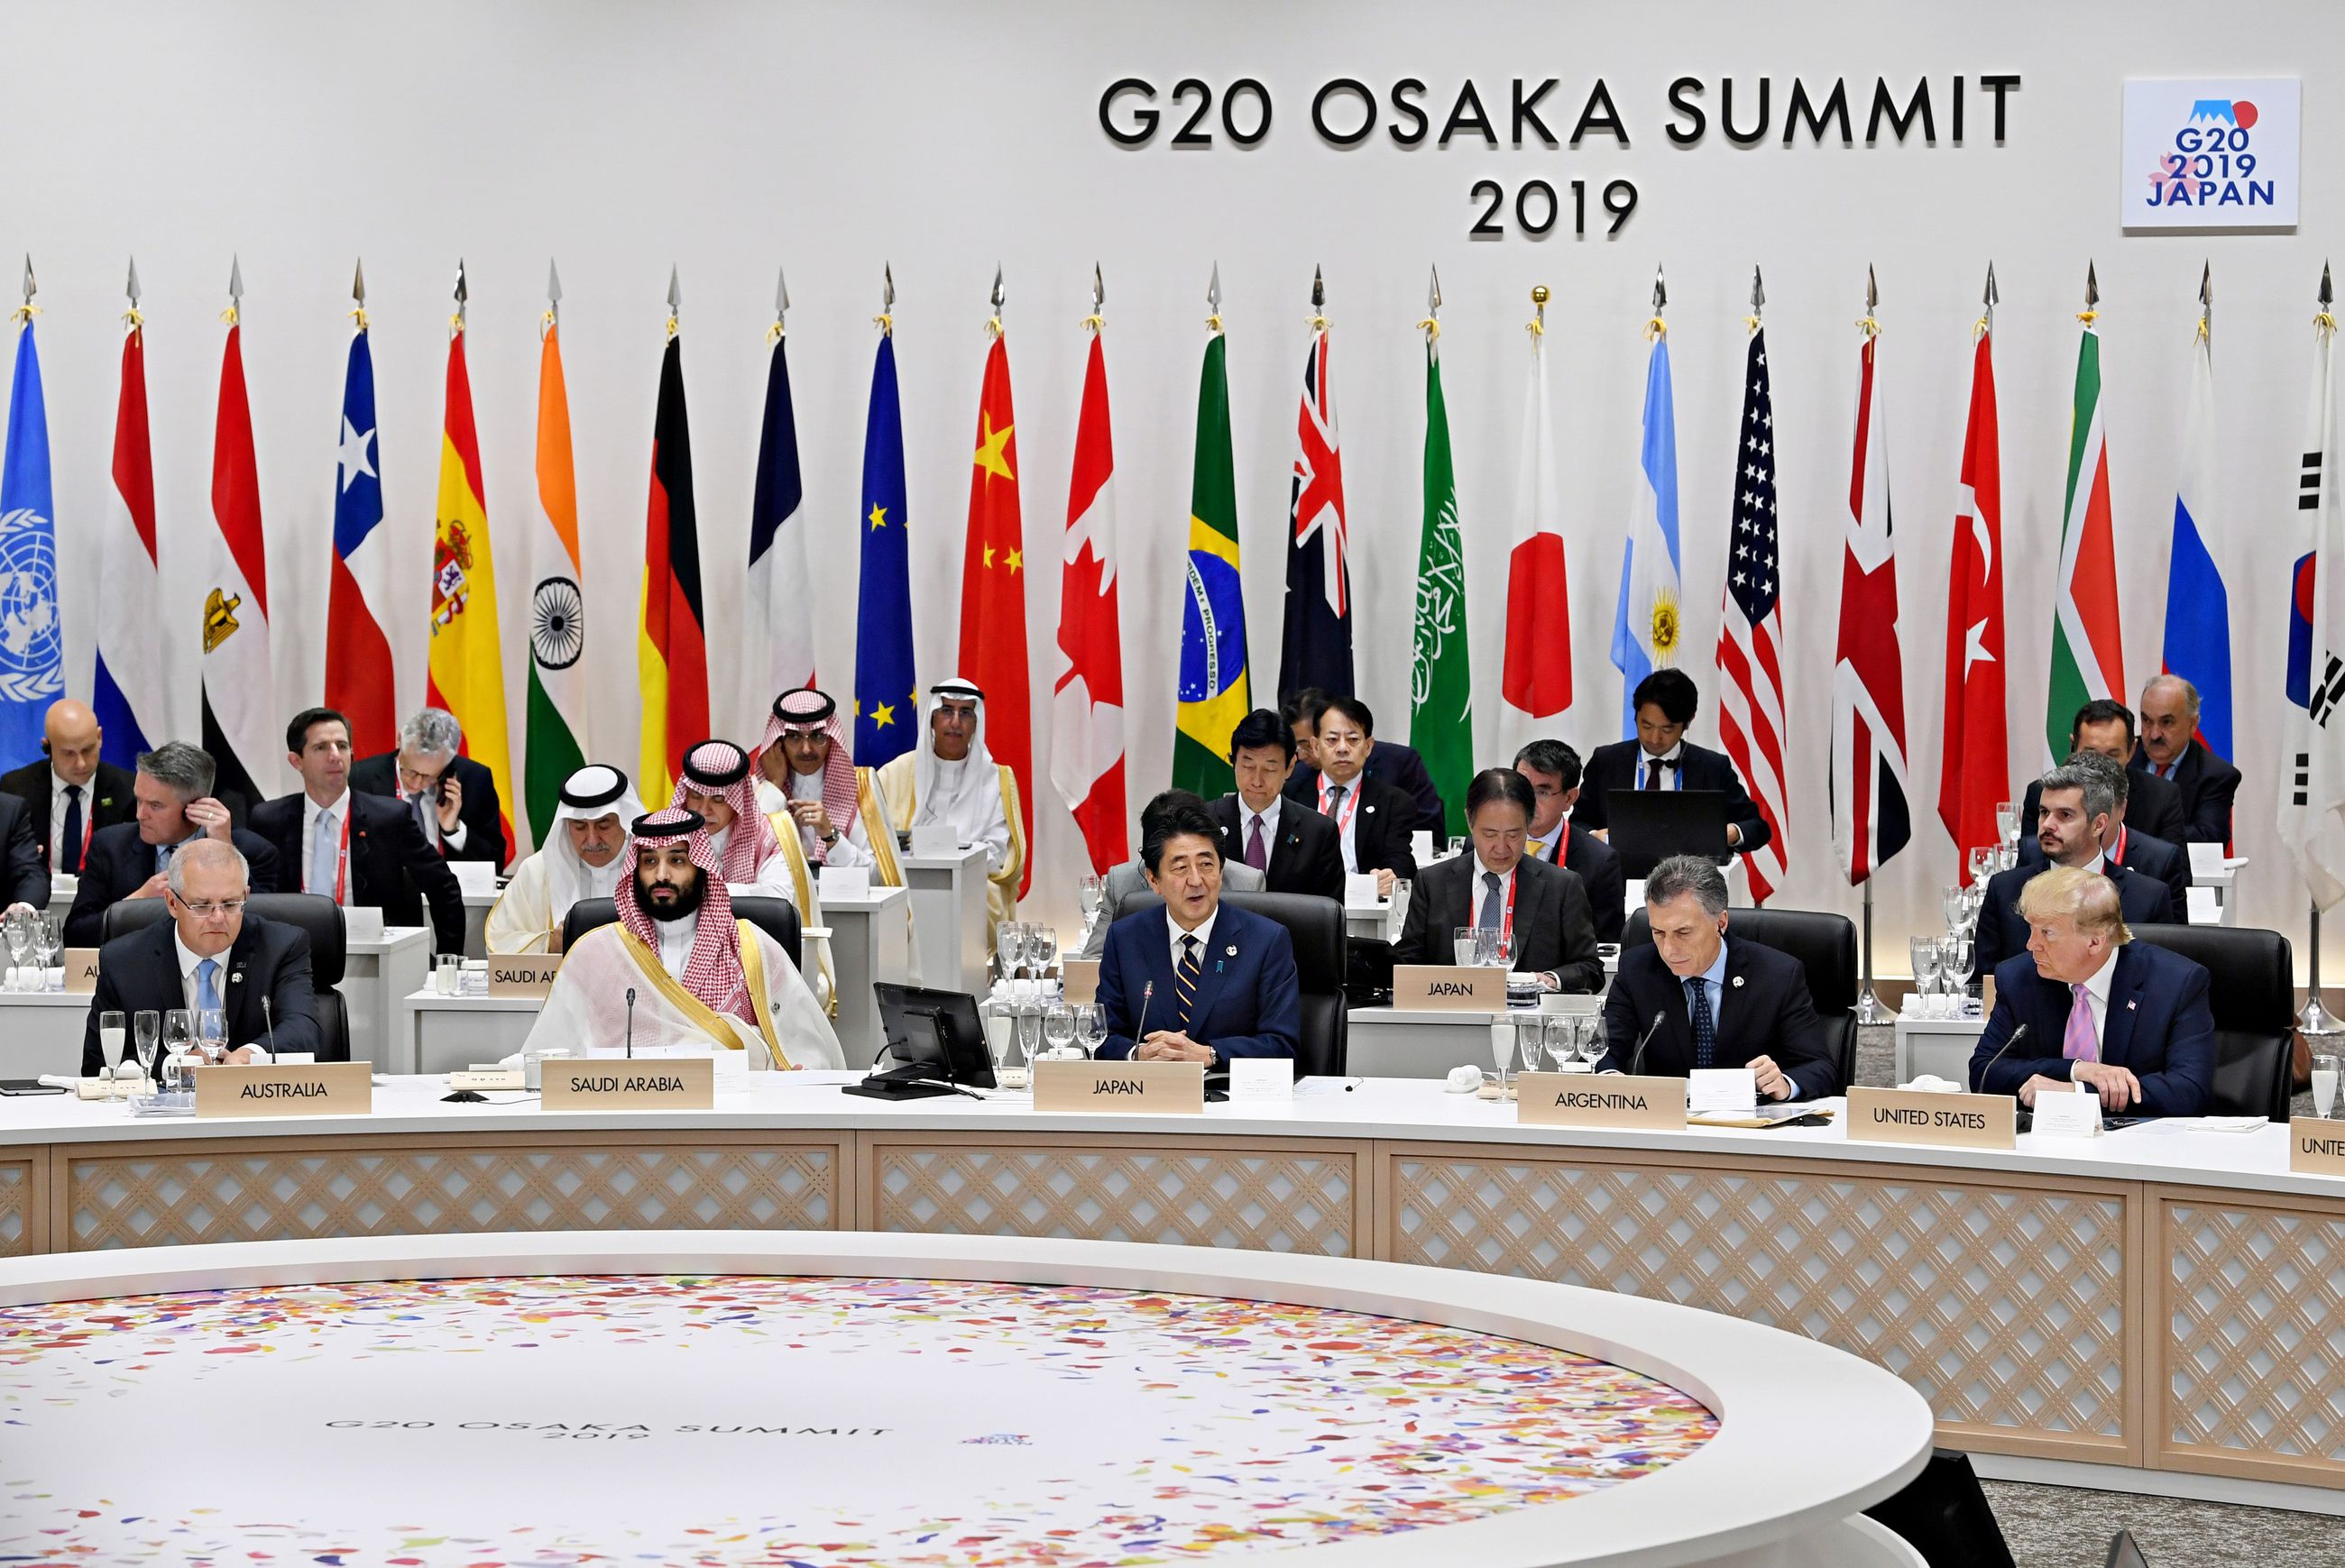 Саммит большой двадцатки где. Саммит g-20 в Осаке. Саммит g20 2019 участники. G20 Osaka Summit 2019. Саммит большой двадцатки 2019.